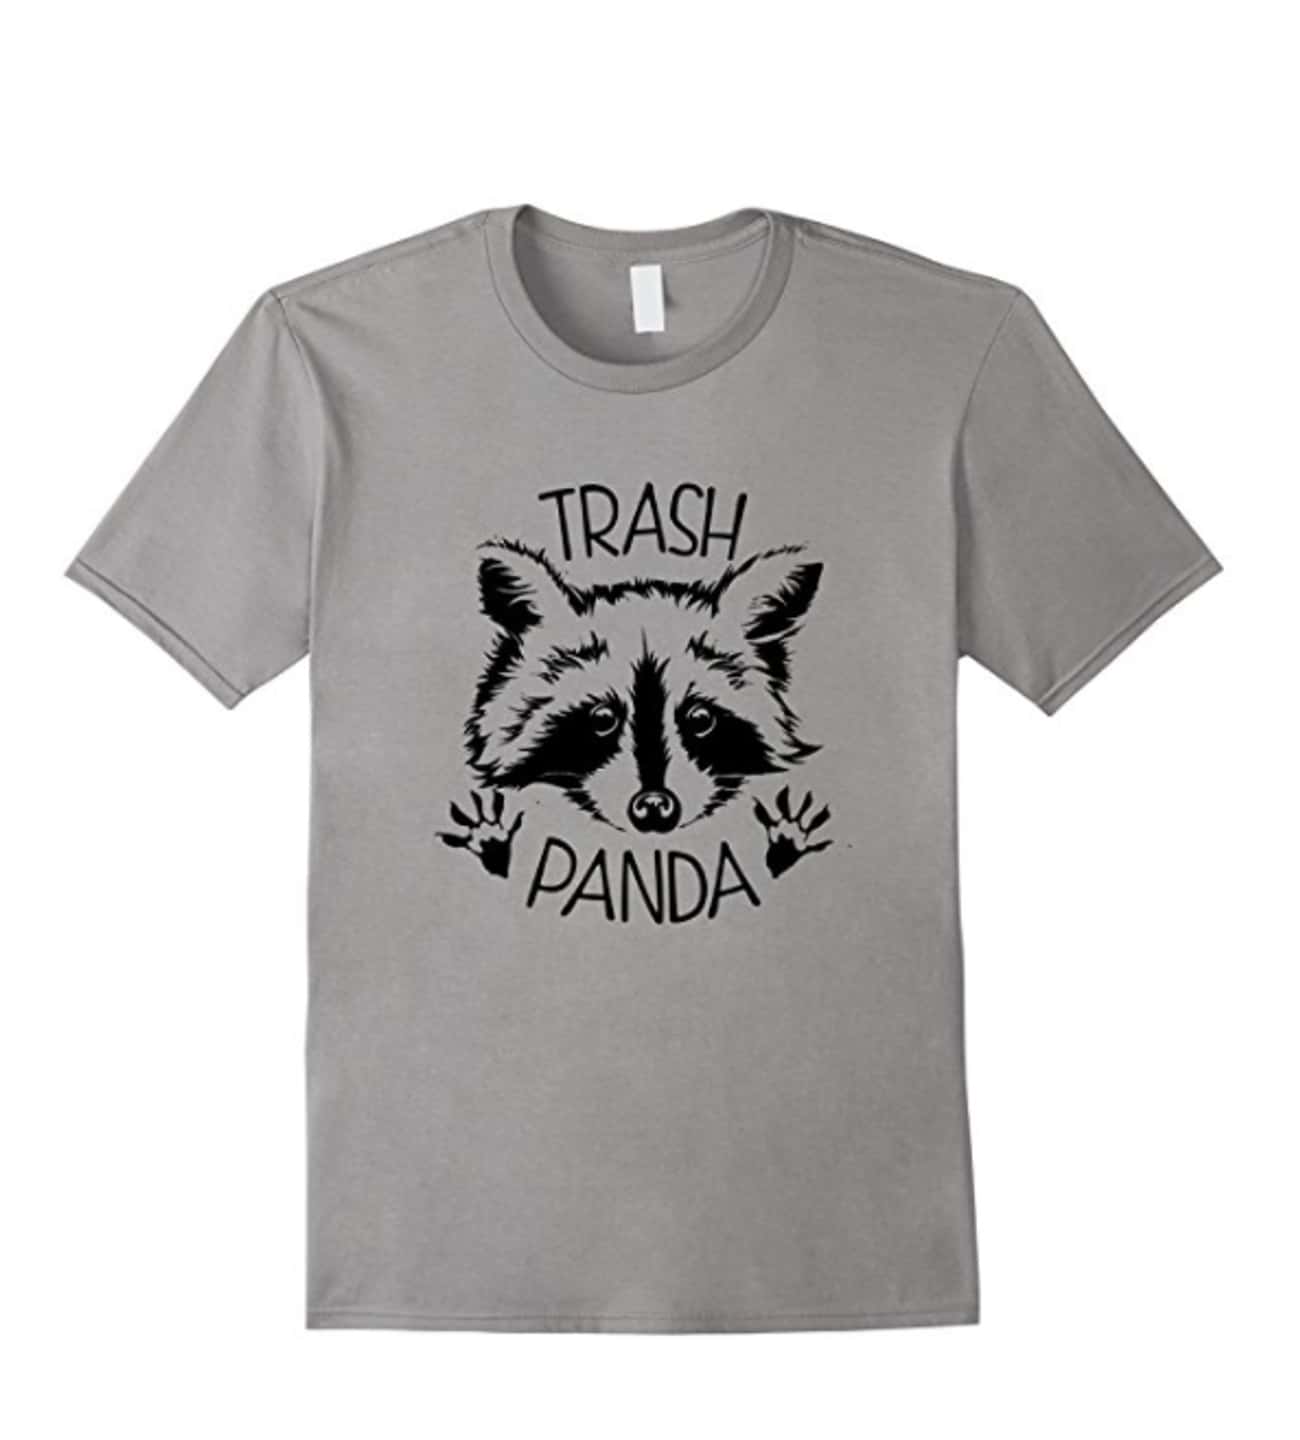 Save The Trash Pandas Shirt